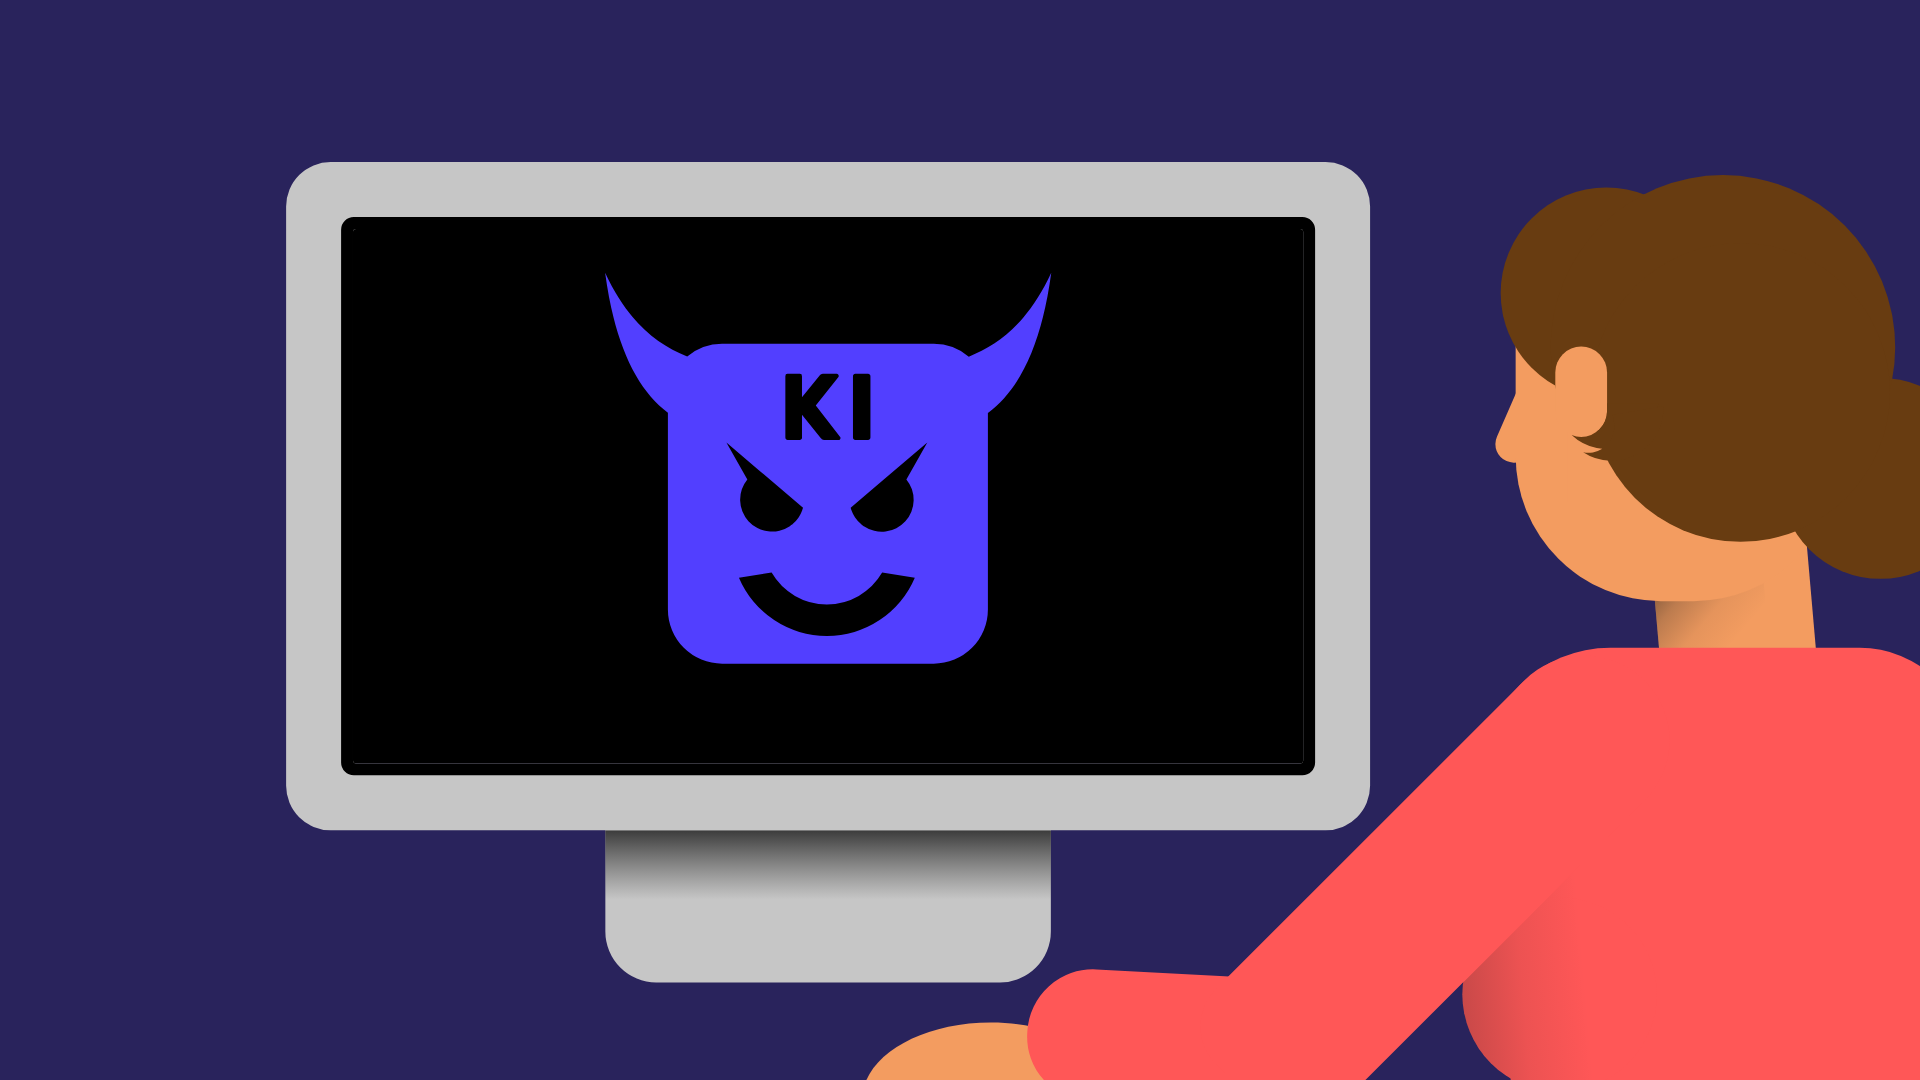 Eine gezeichnete Person sitzt vor einem Computerbildschirm. Auf dem Bildschirm ist ein violettes Teufelchen, das böse grinst. Auf der Stirn des Teufelchens steht "KI". 